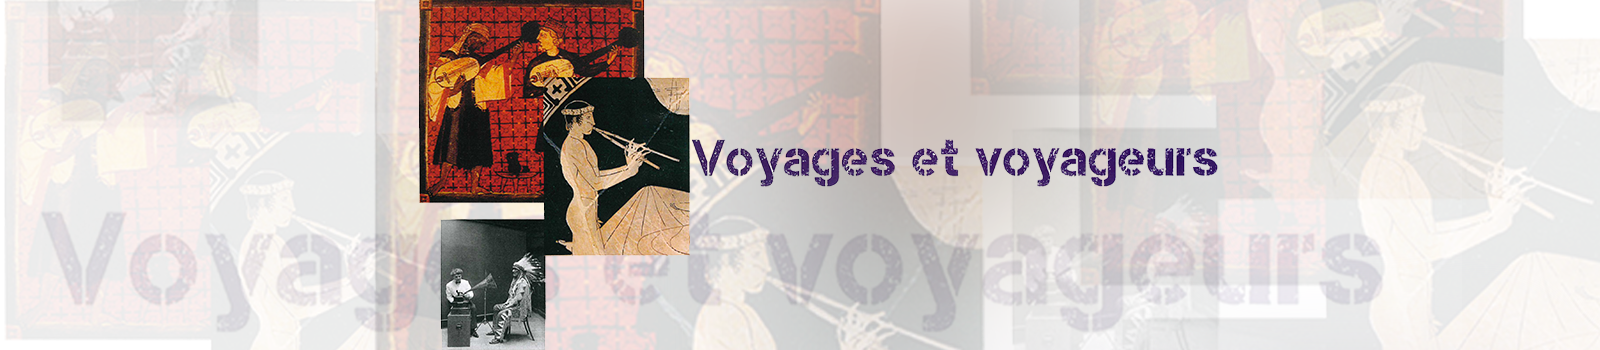 Voyages et Voyageurs : Séminaire général du C.R.H.I.A. - Master Histoire, civilisation, patrimoine